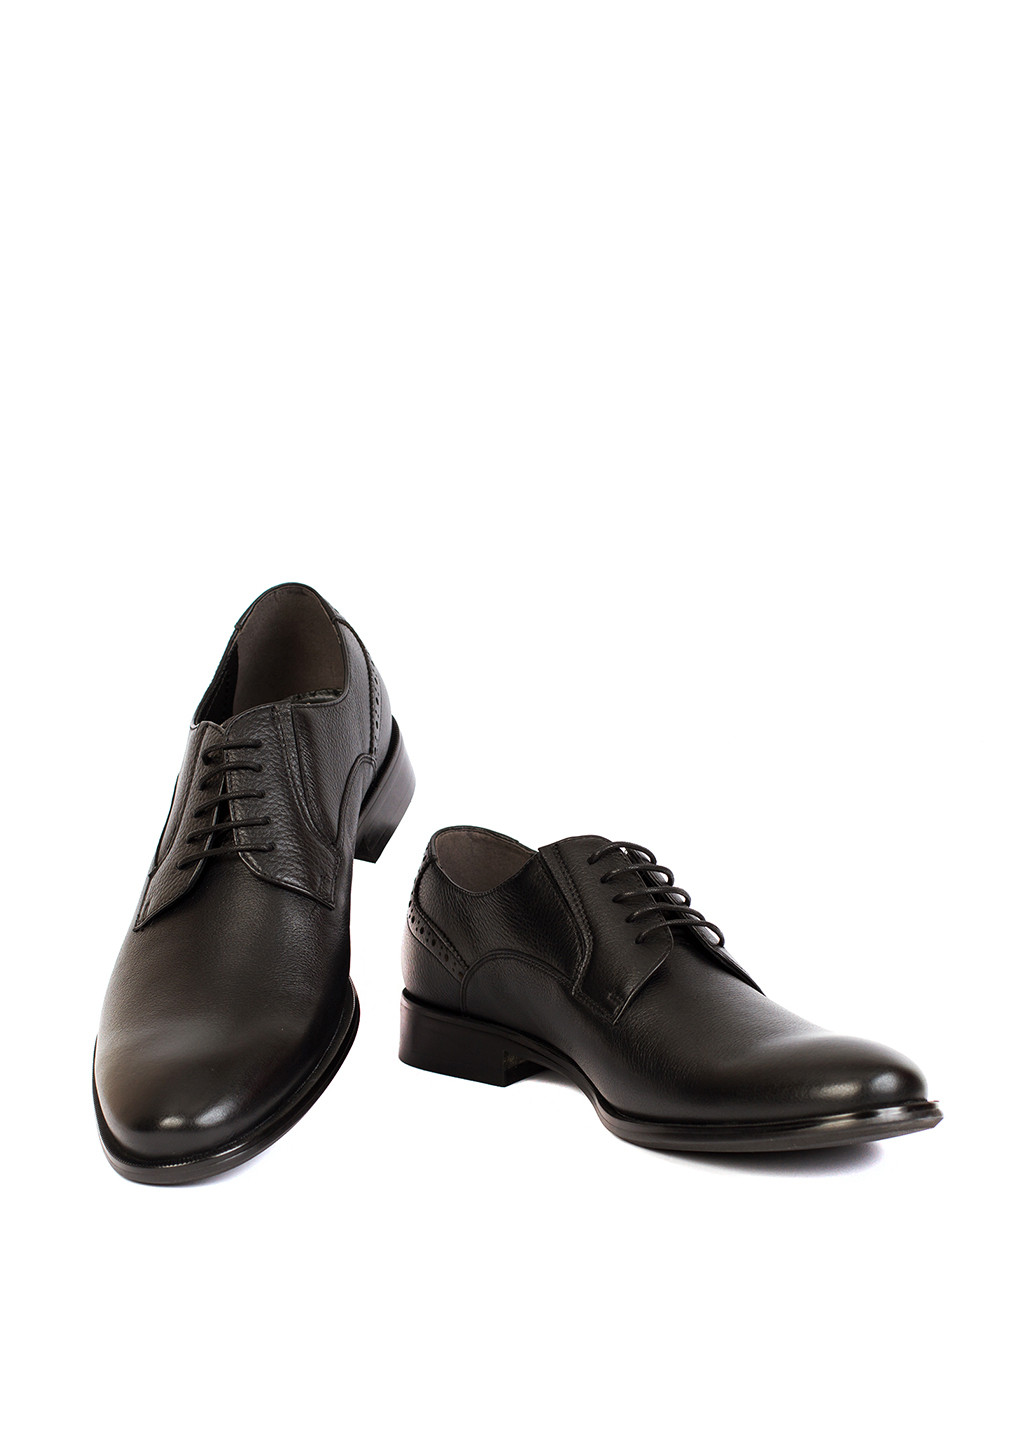 Черные классические туфли PAZOLINI на шнурках